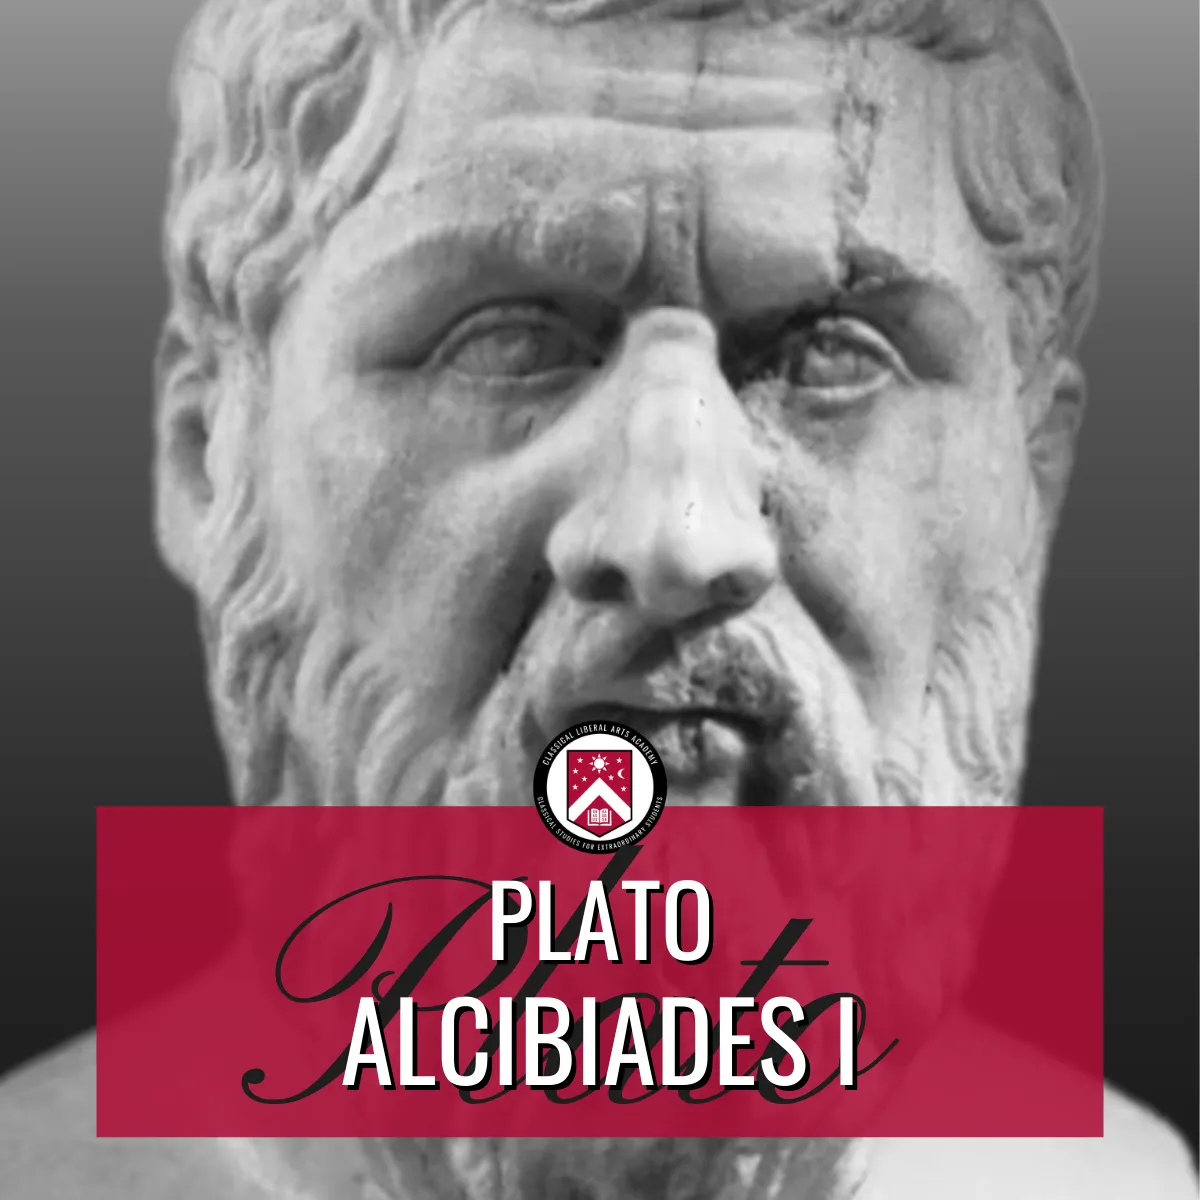 Works of Plato, Alcibiades I